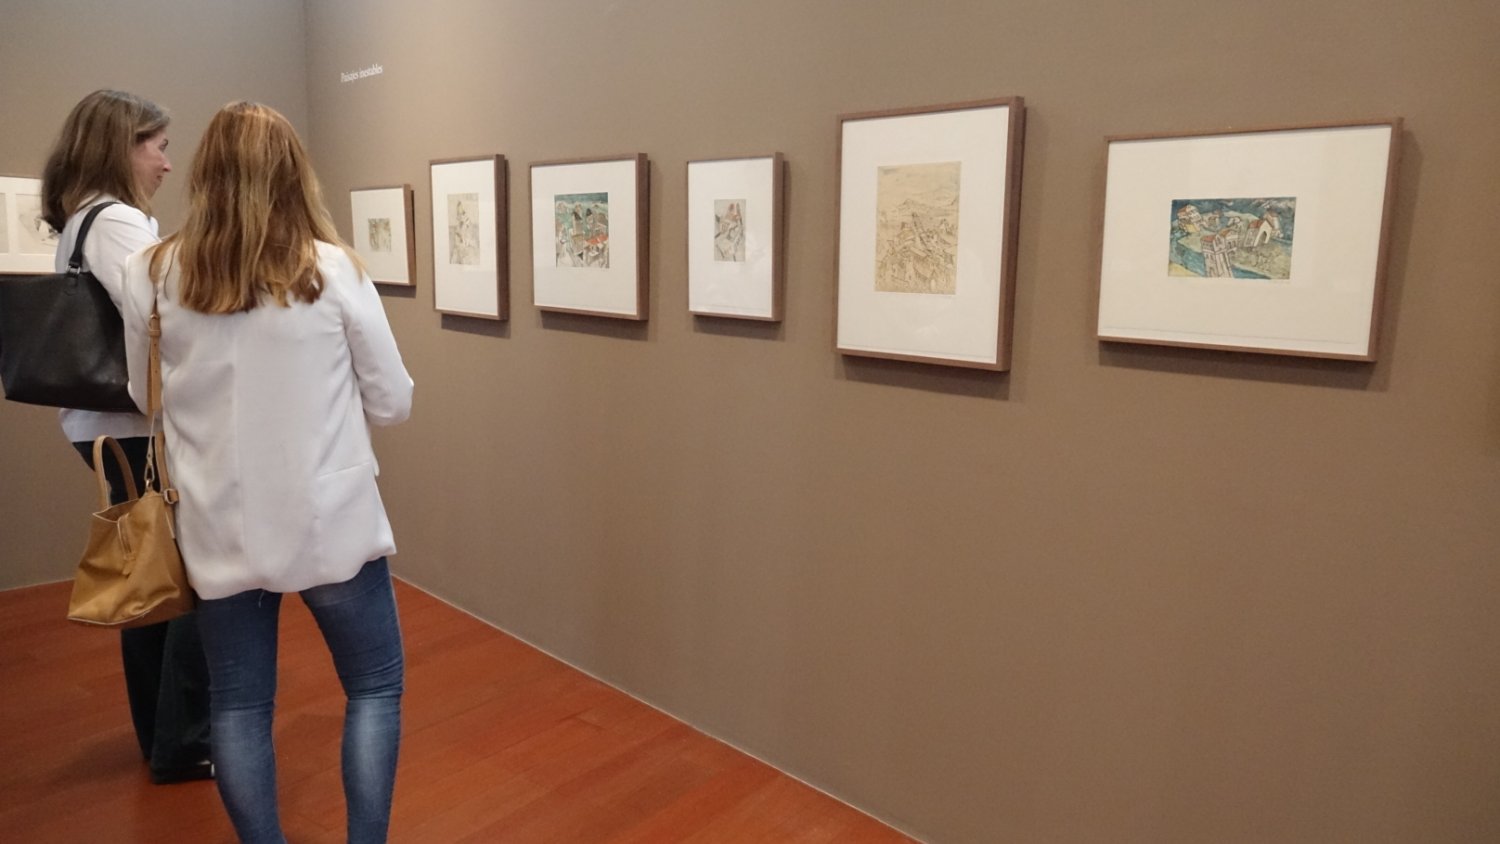 El Mupam concluye el ciclo de encuentros con el pintor Daniel Quintero abordando su labor como dibujante y grabador